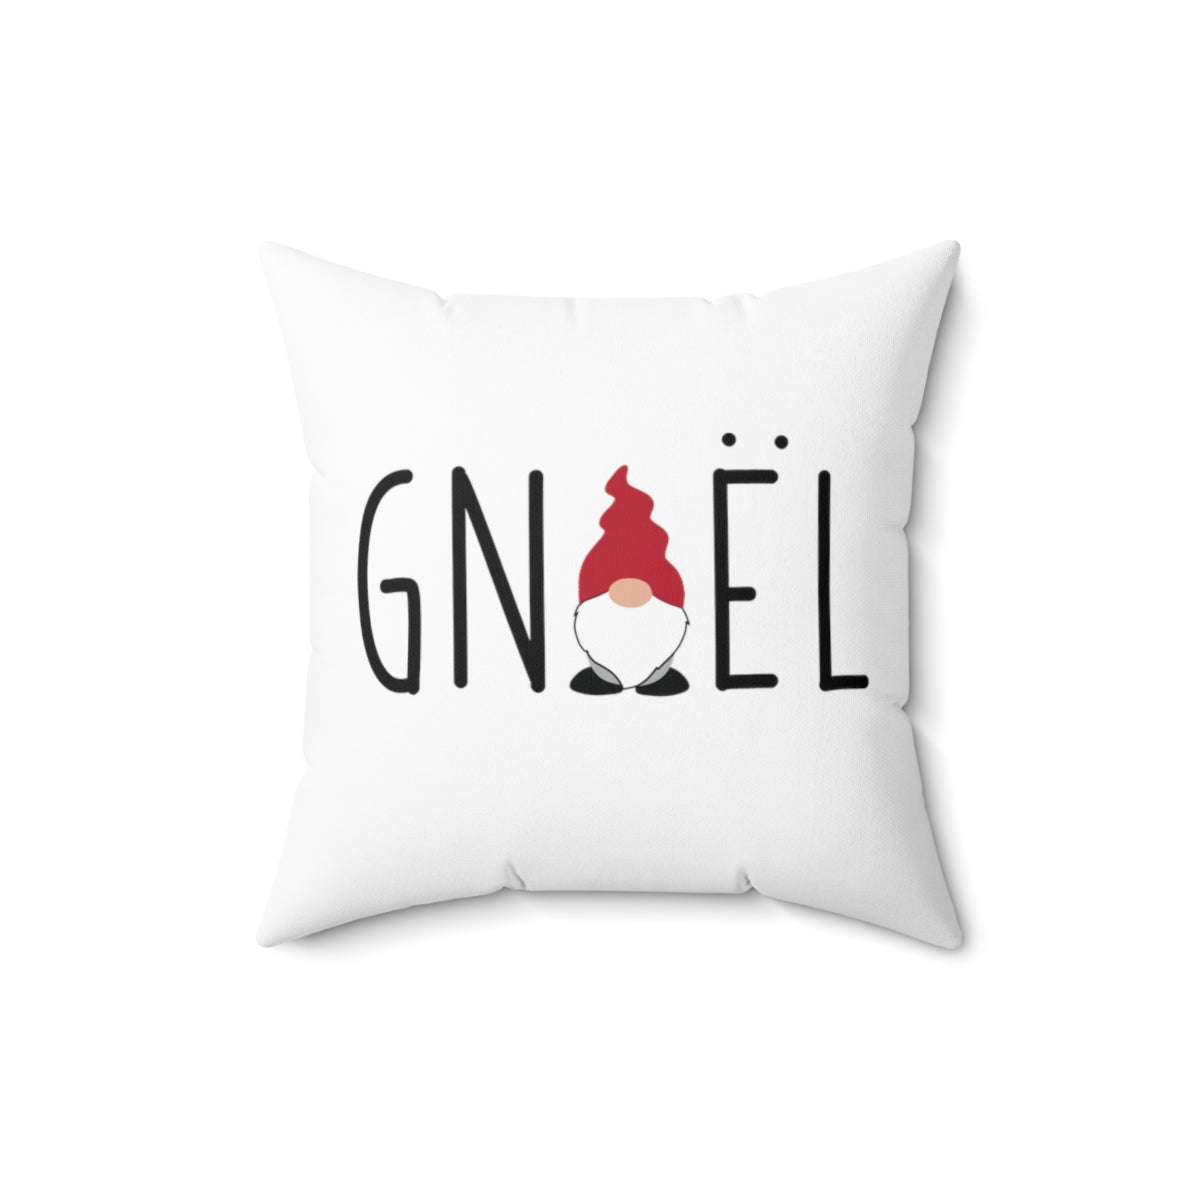 Gnoel Pillow Cover Scandinavian Design Studio